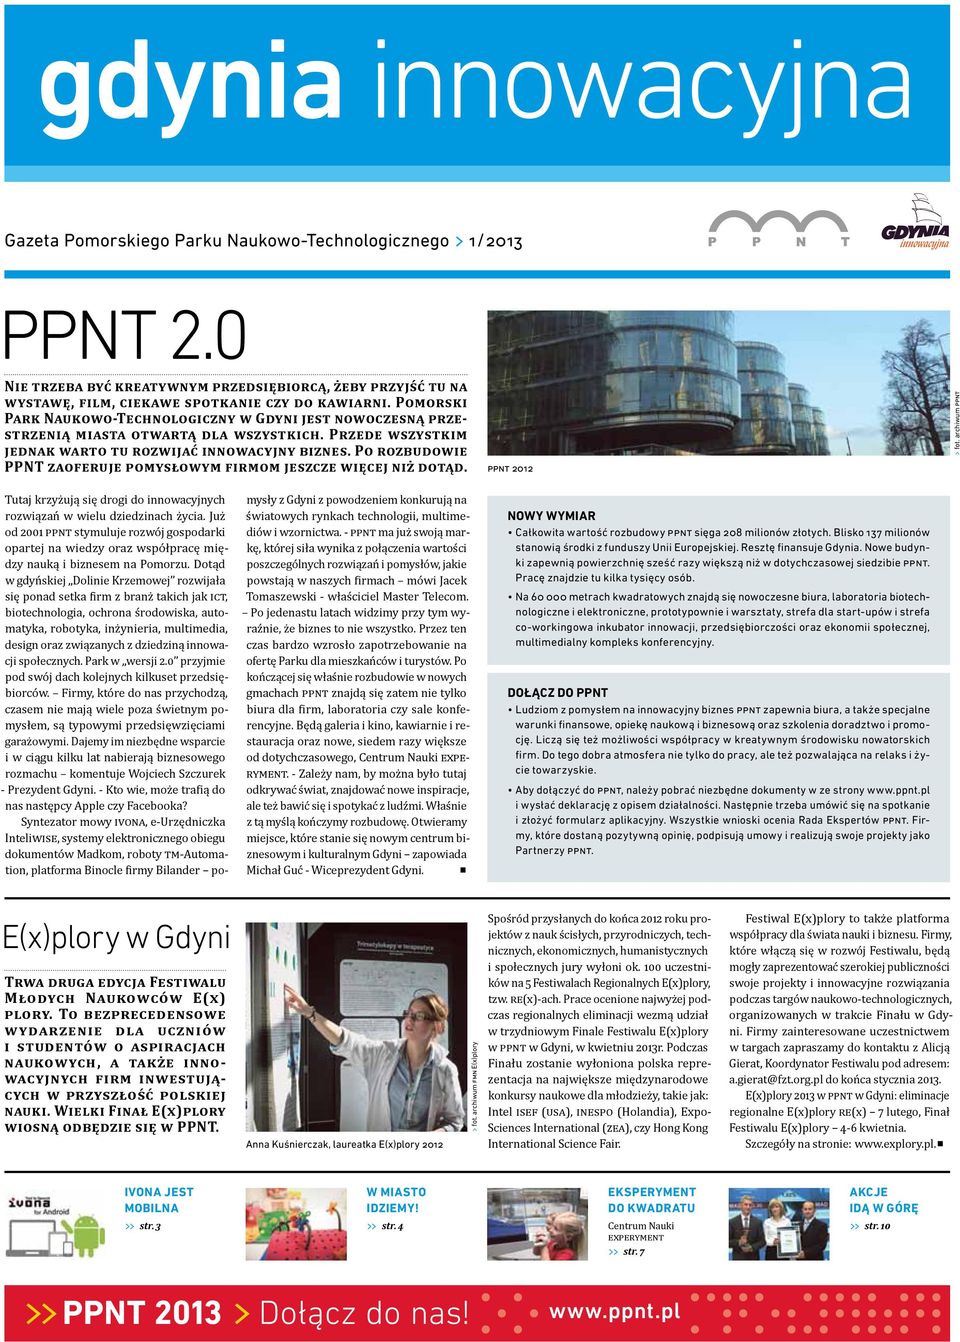 Po rozbudowie PPNT zaoferuje omysłowym firmom jeszcze więcej niż dotąd. PPNT 2012 > > fot. archiwum PPNT Tutaj krzyżują się drogi do innowacyjnych rozwiązań w wielu dziedzinach życia.